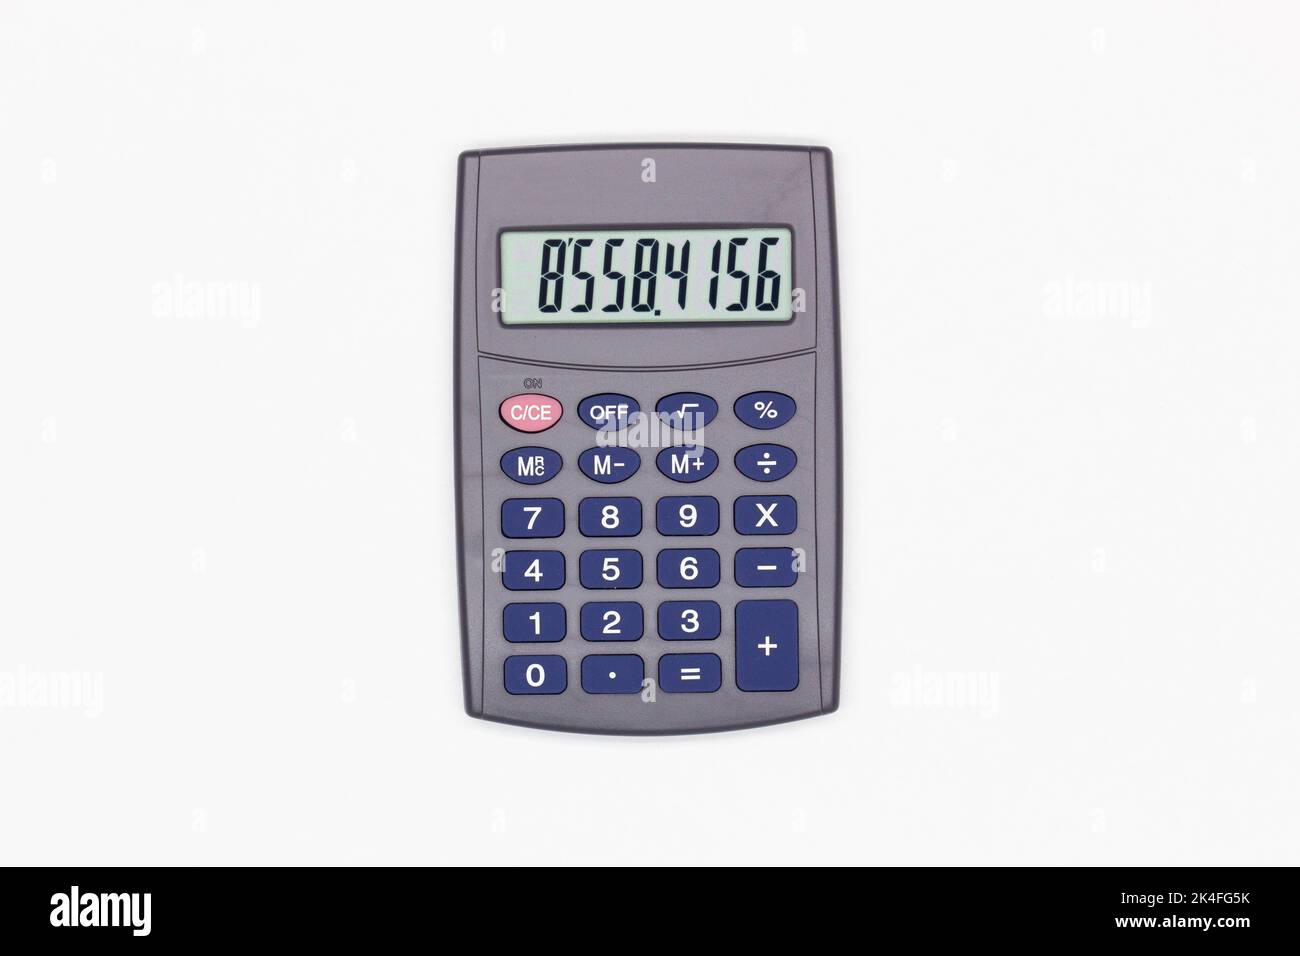 Calculatrice avec boutons bleus et chiffres sur l'écran numérique sur fond blanc. Isolé. Calculatrice financière solaire. Électronique Banque D'Images